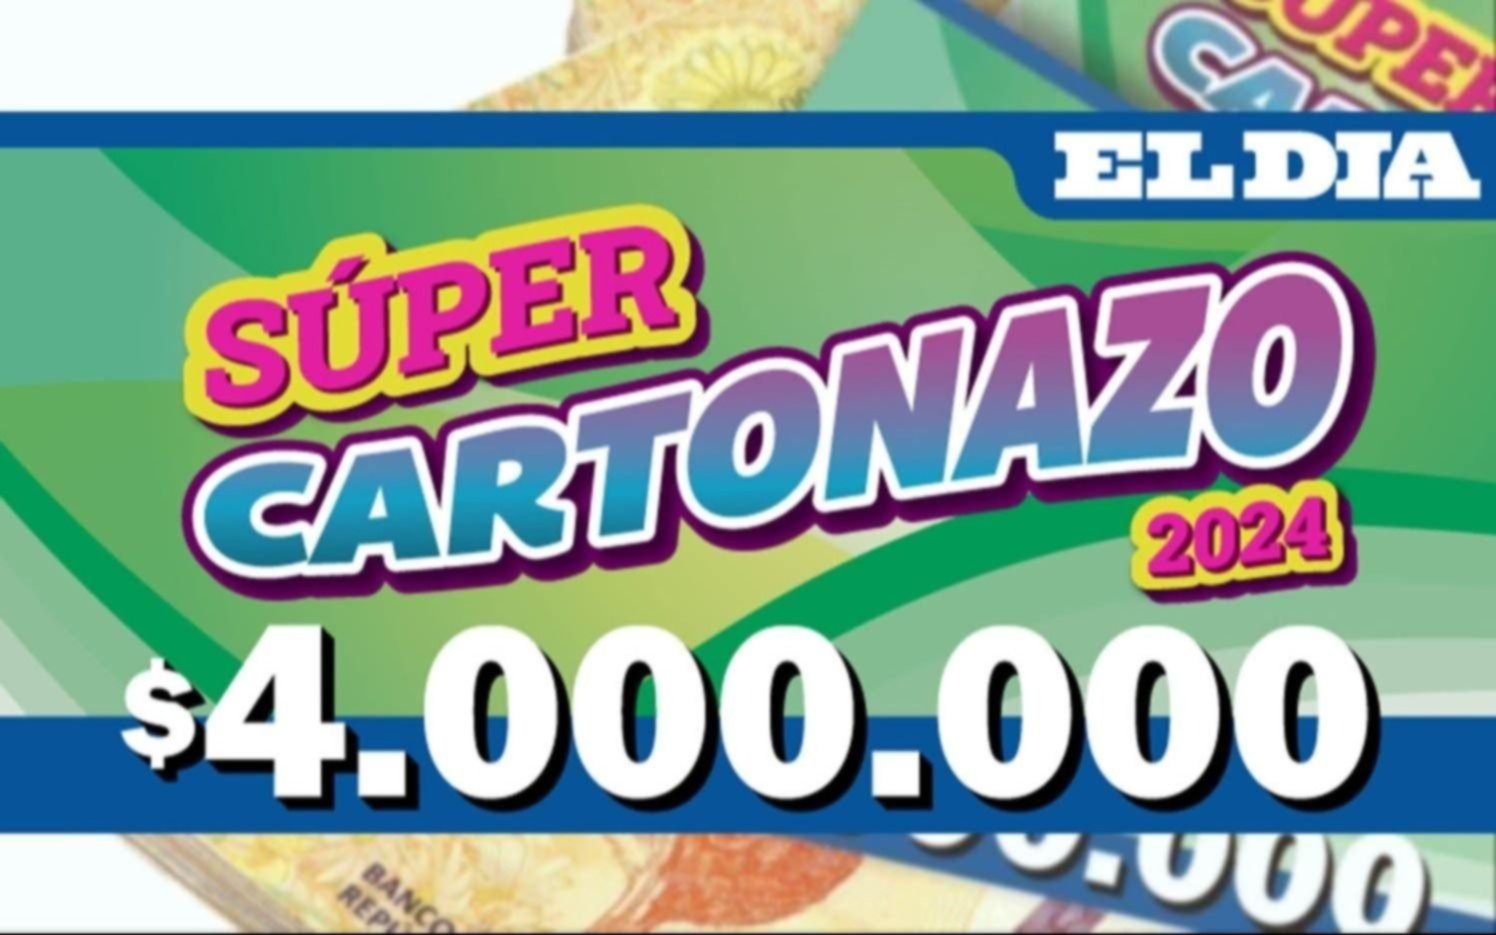 Se define el Súper Cartonazo por $4.000.000: este jueves salió la última tanda de números